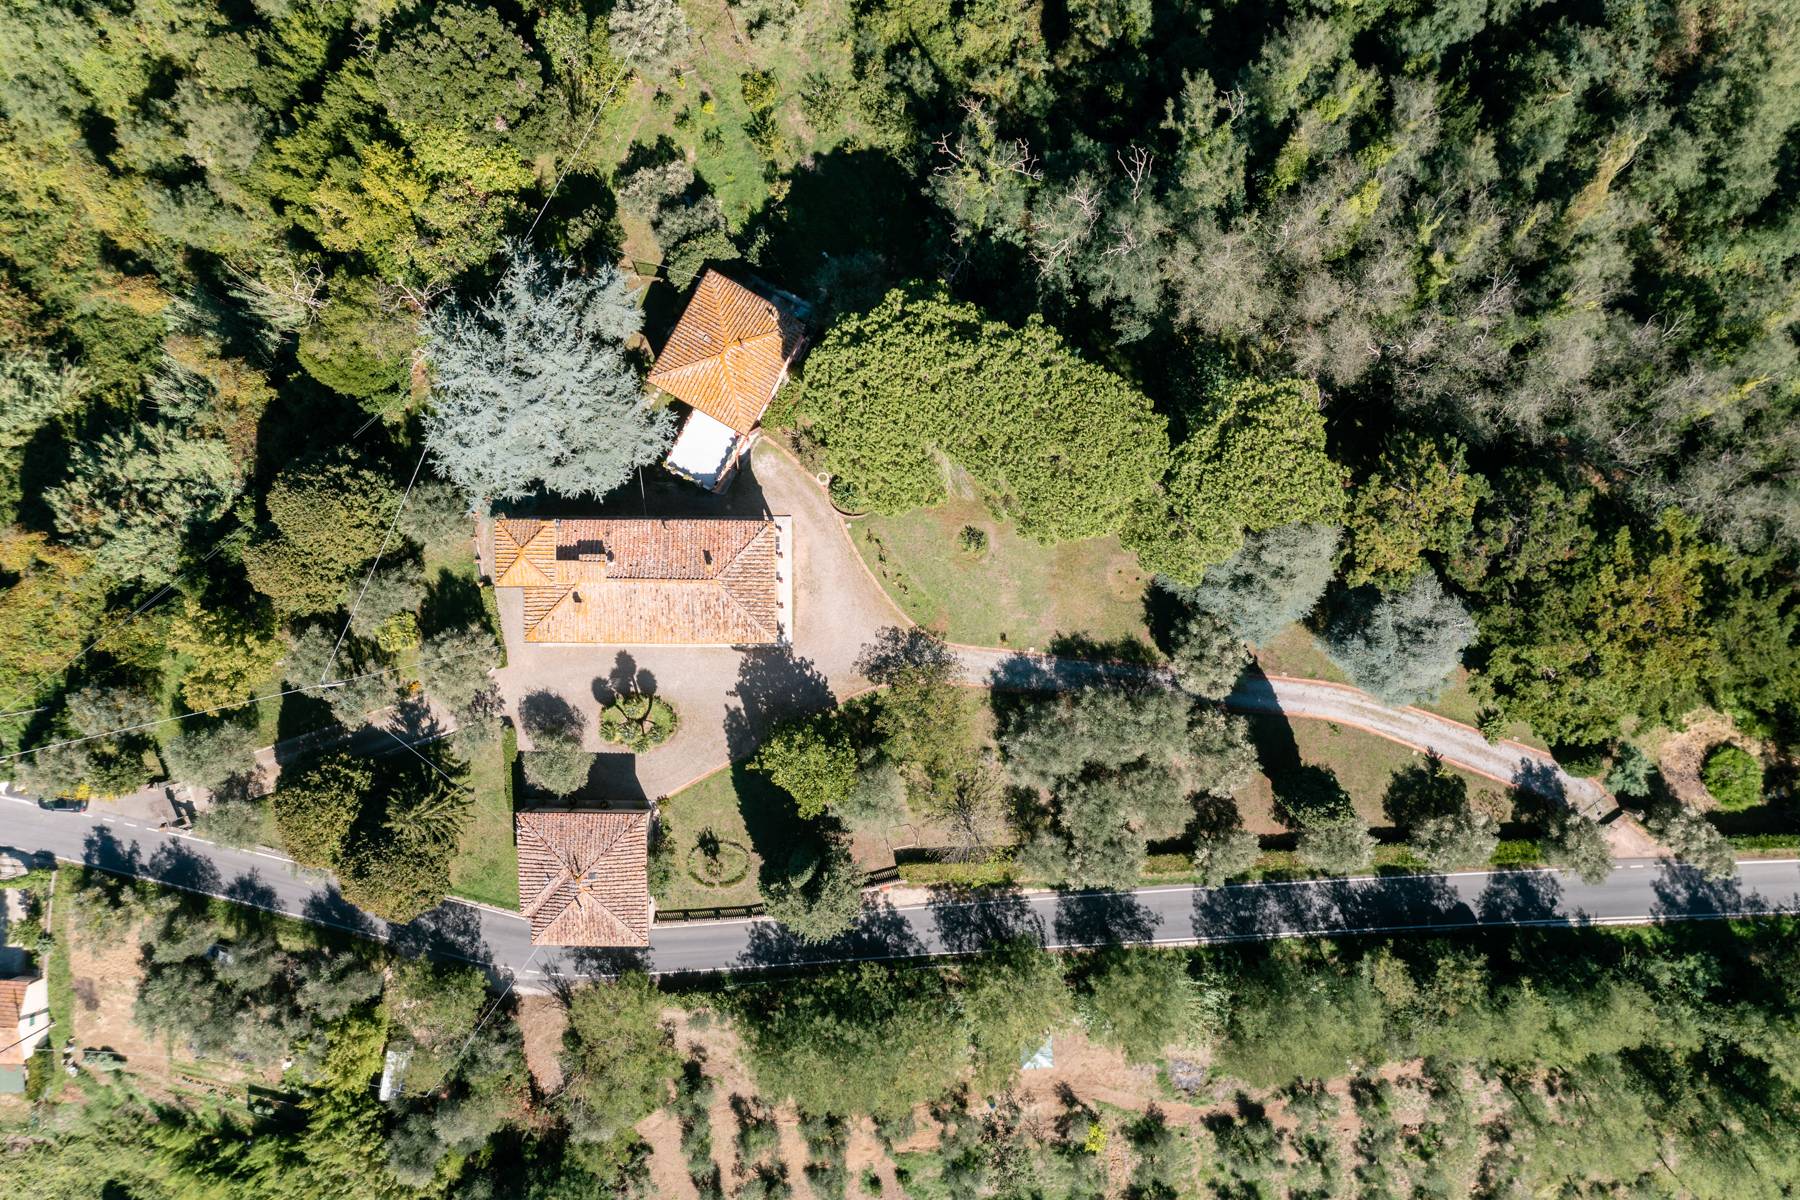 Villa in Vendita a Crespina Lorenzana: 5 locali, 900 mq - Foto 1